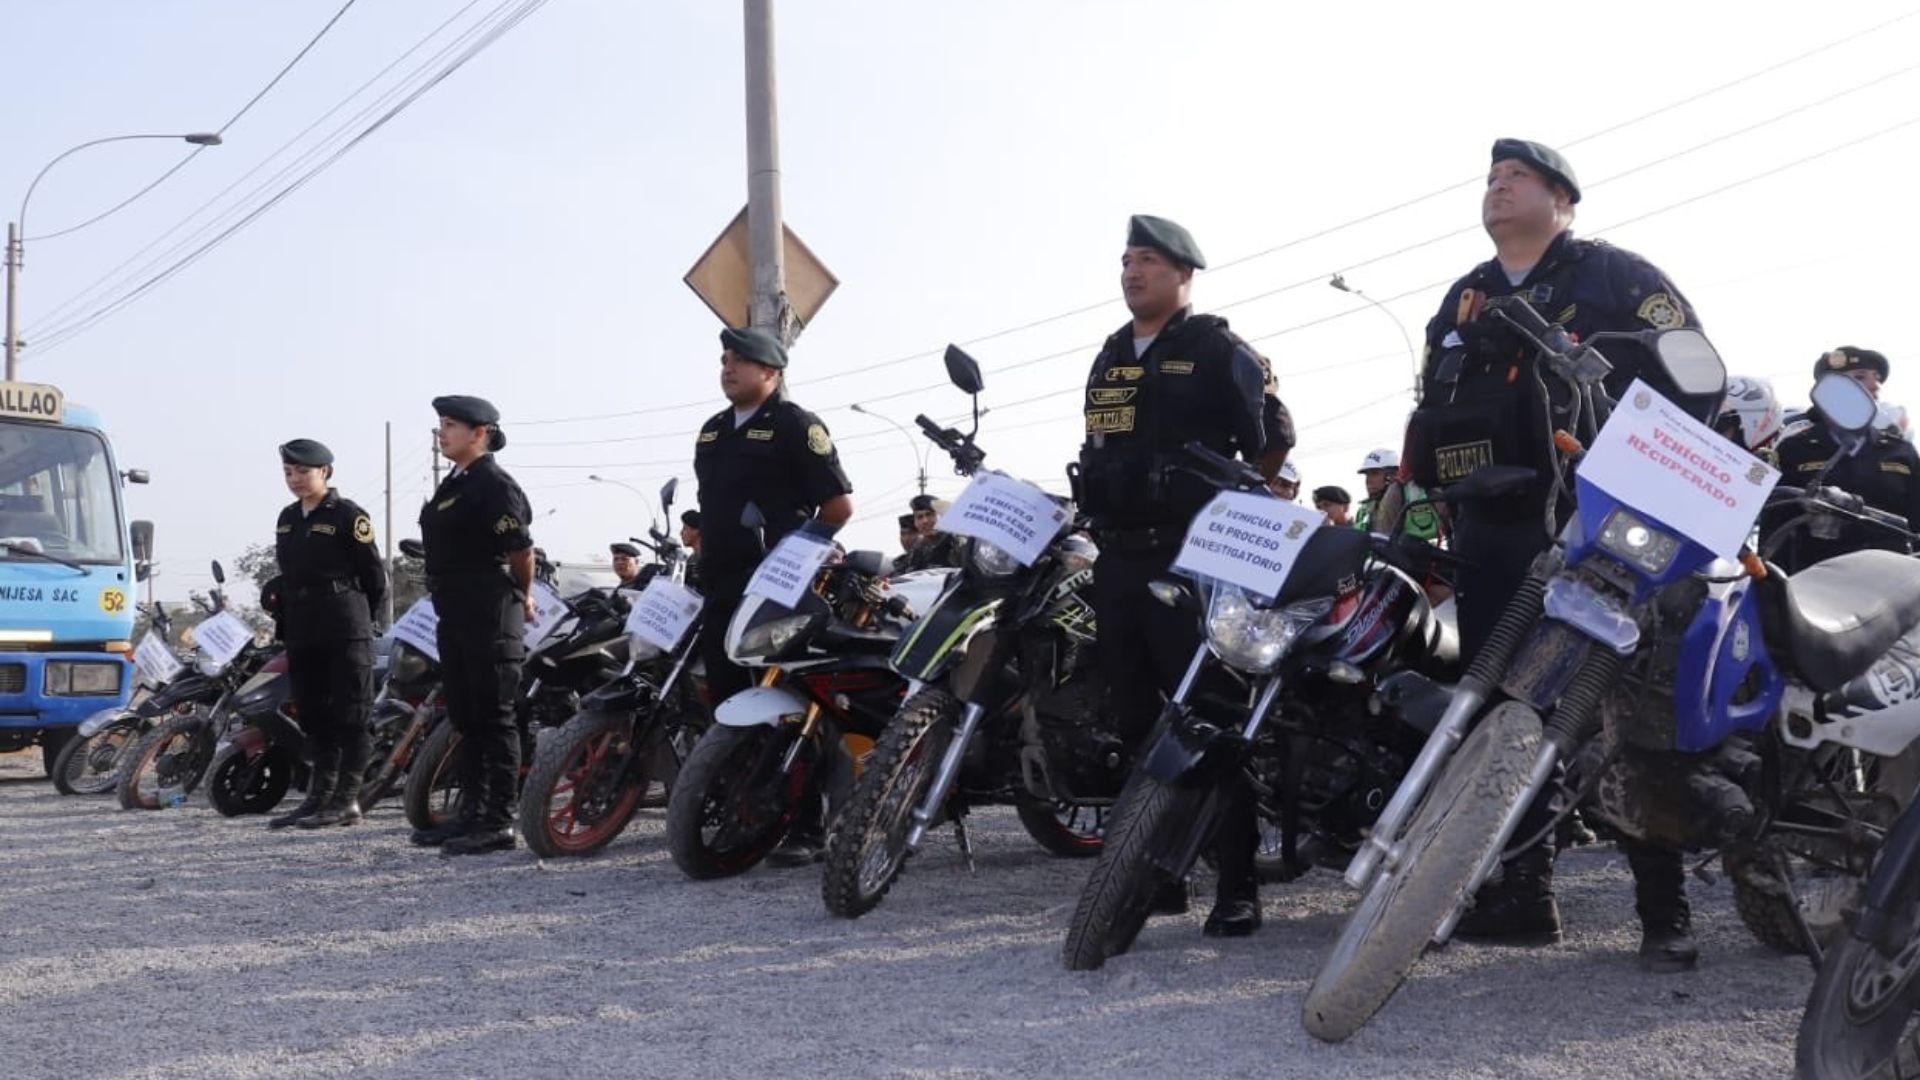 La PNP logró recuperar 17 motos lineales, ocho autos, tres camionetas, entre otros vehículos. | Twitter PNP